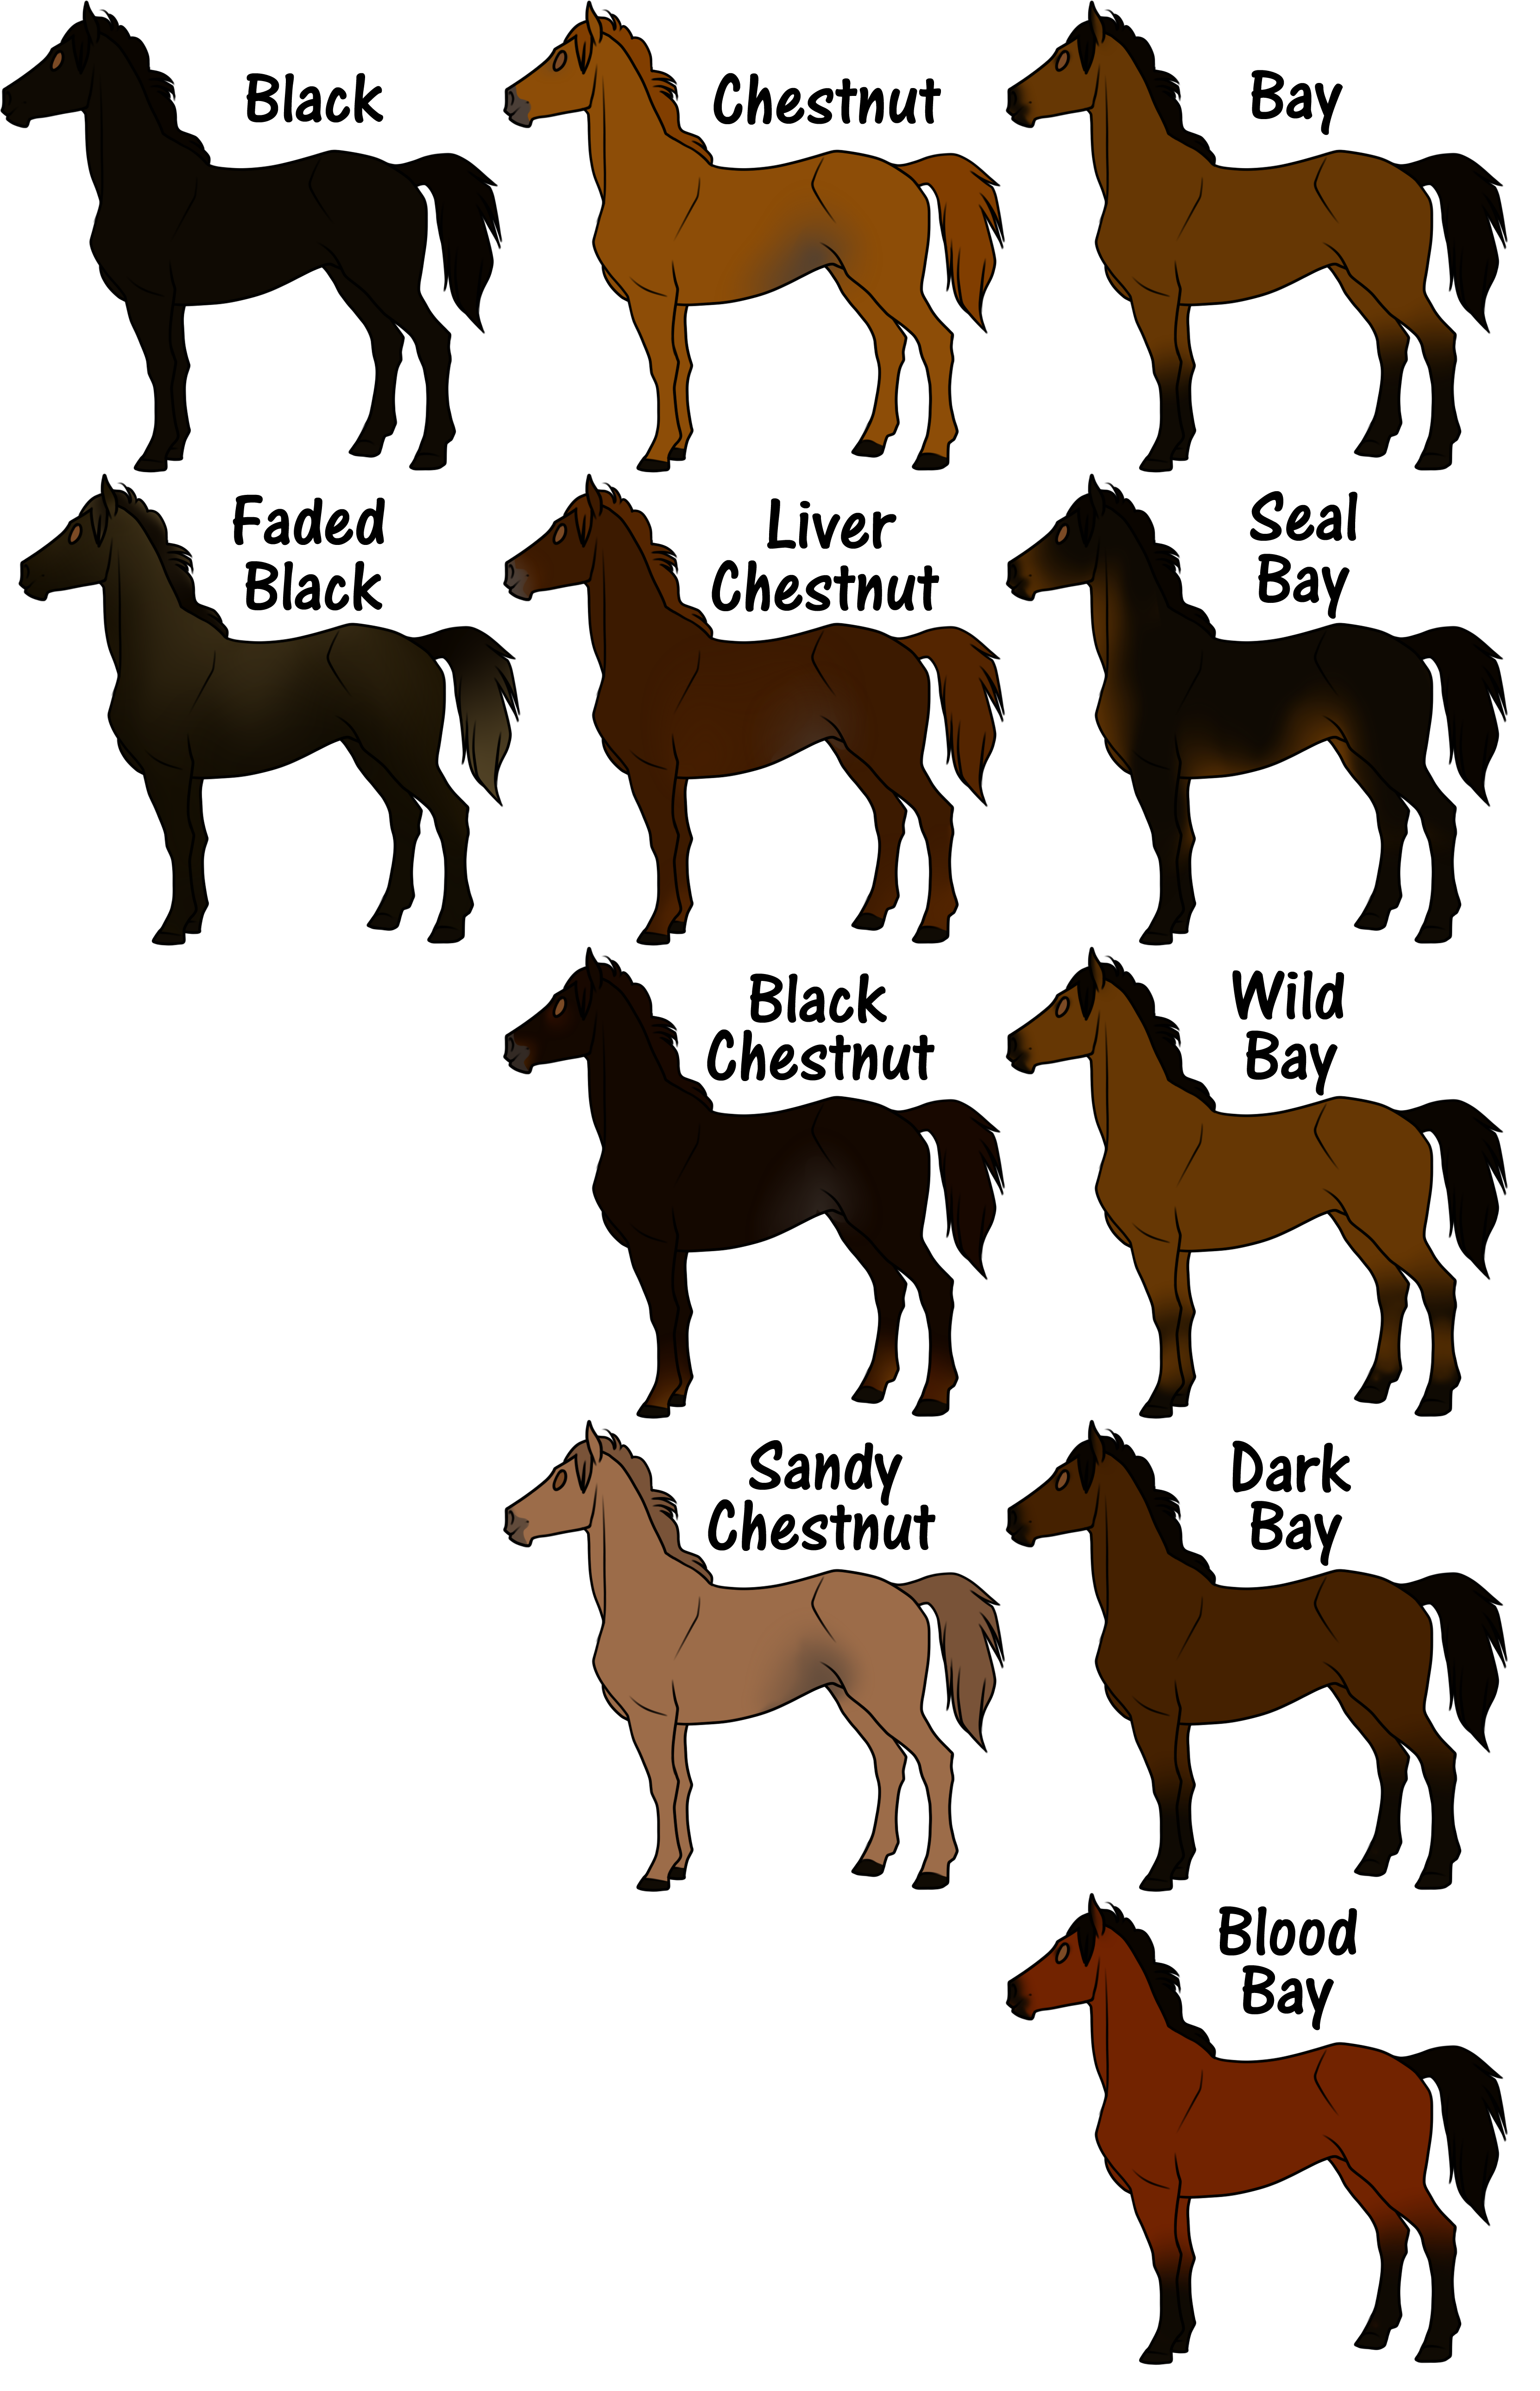 Какие бывают клички у лошадей. Генетика мастей лошадей. Наследование мастей и отметин лошадей. Имена для лошадей. Расцветки мустангов лошадей.